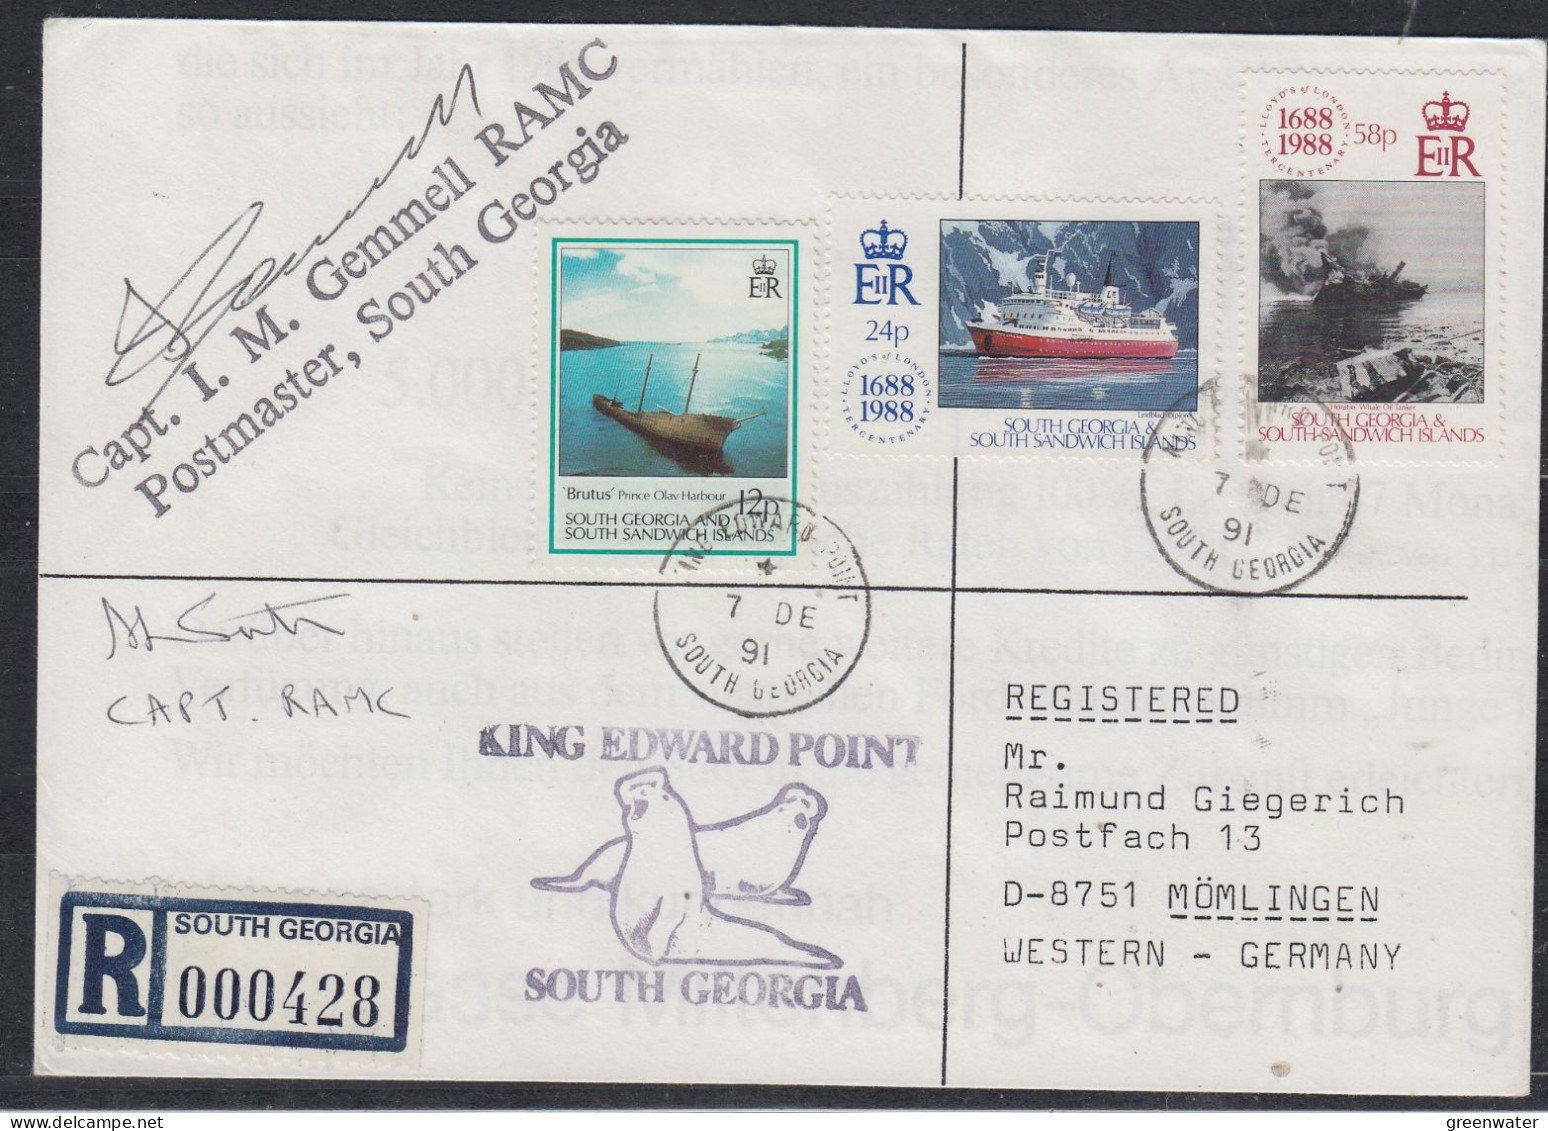 South Georgia & South Sandwich Islands 1991 Registered Cover 2  Signatures  Ca 7 DE 1991 (FG178) - Südgeorgien